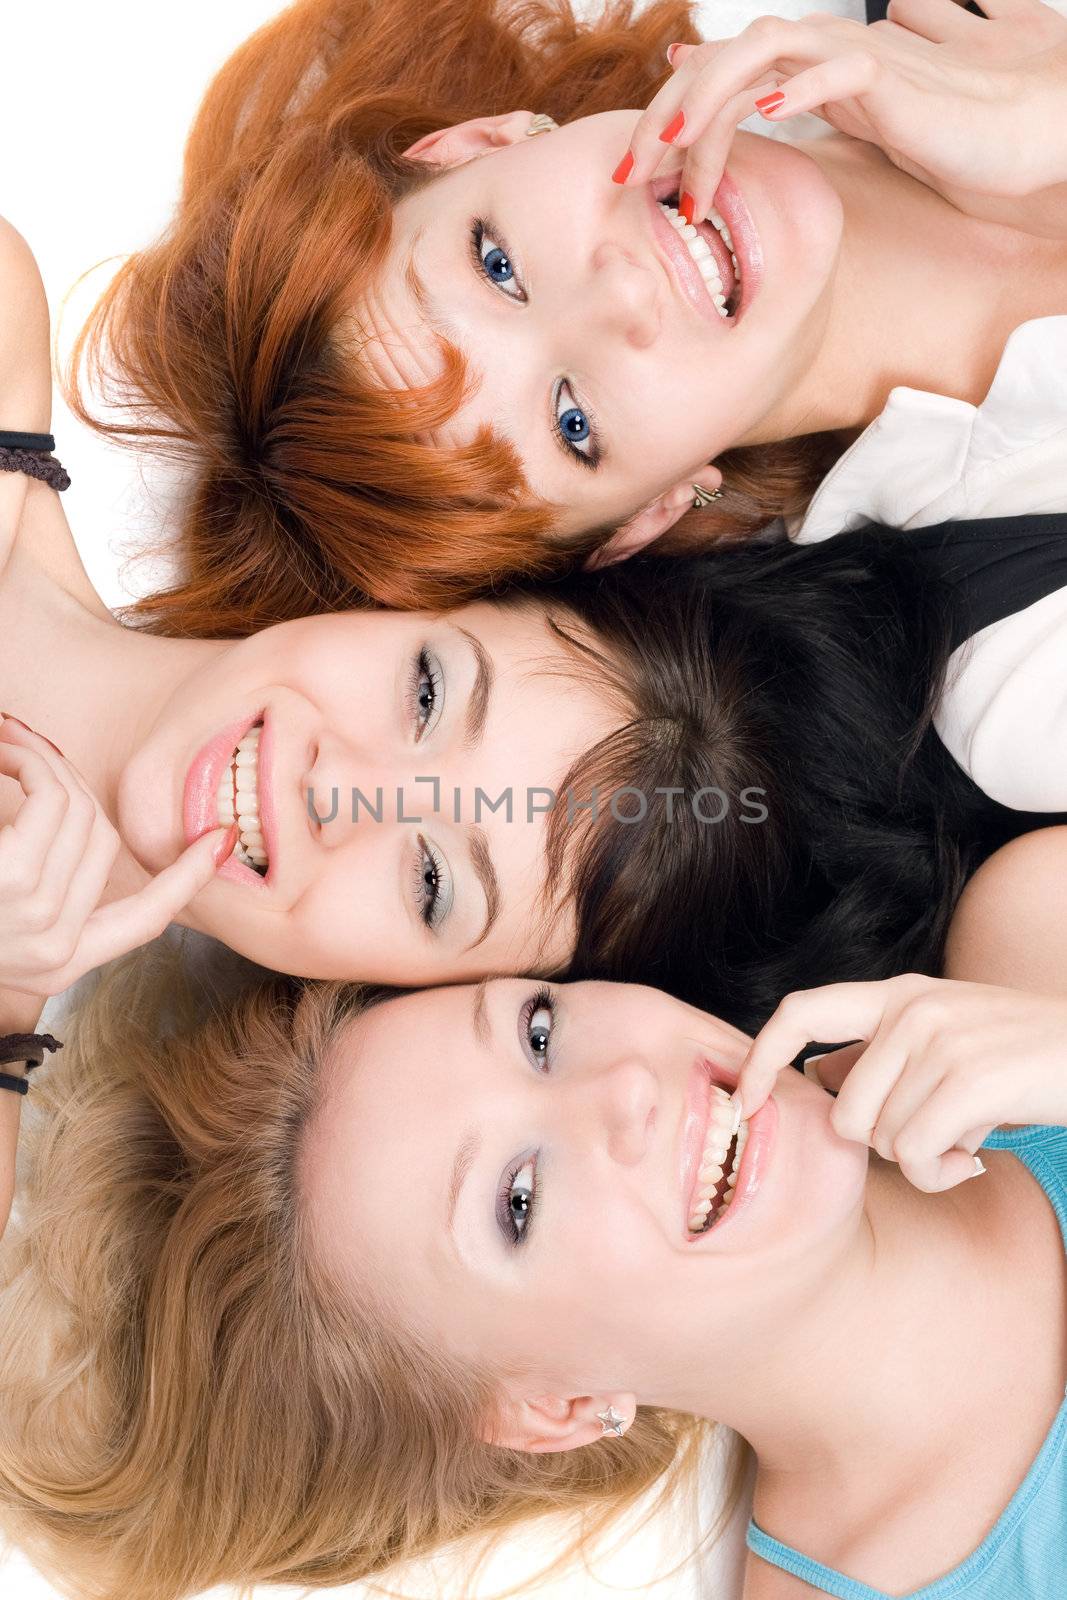 Three naughty women by acidgrey